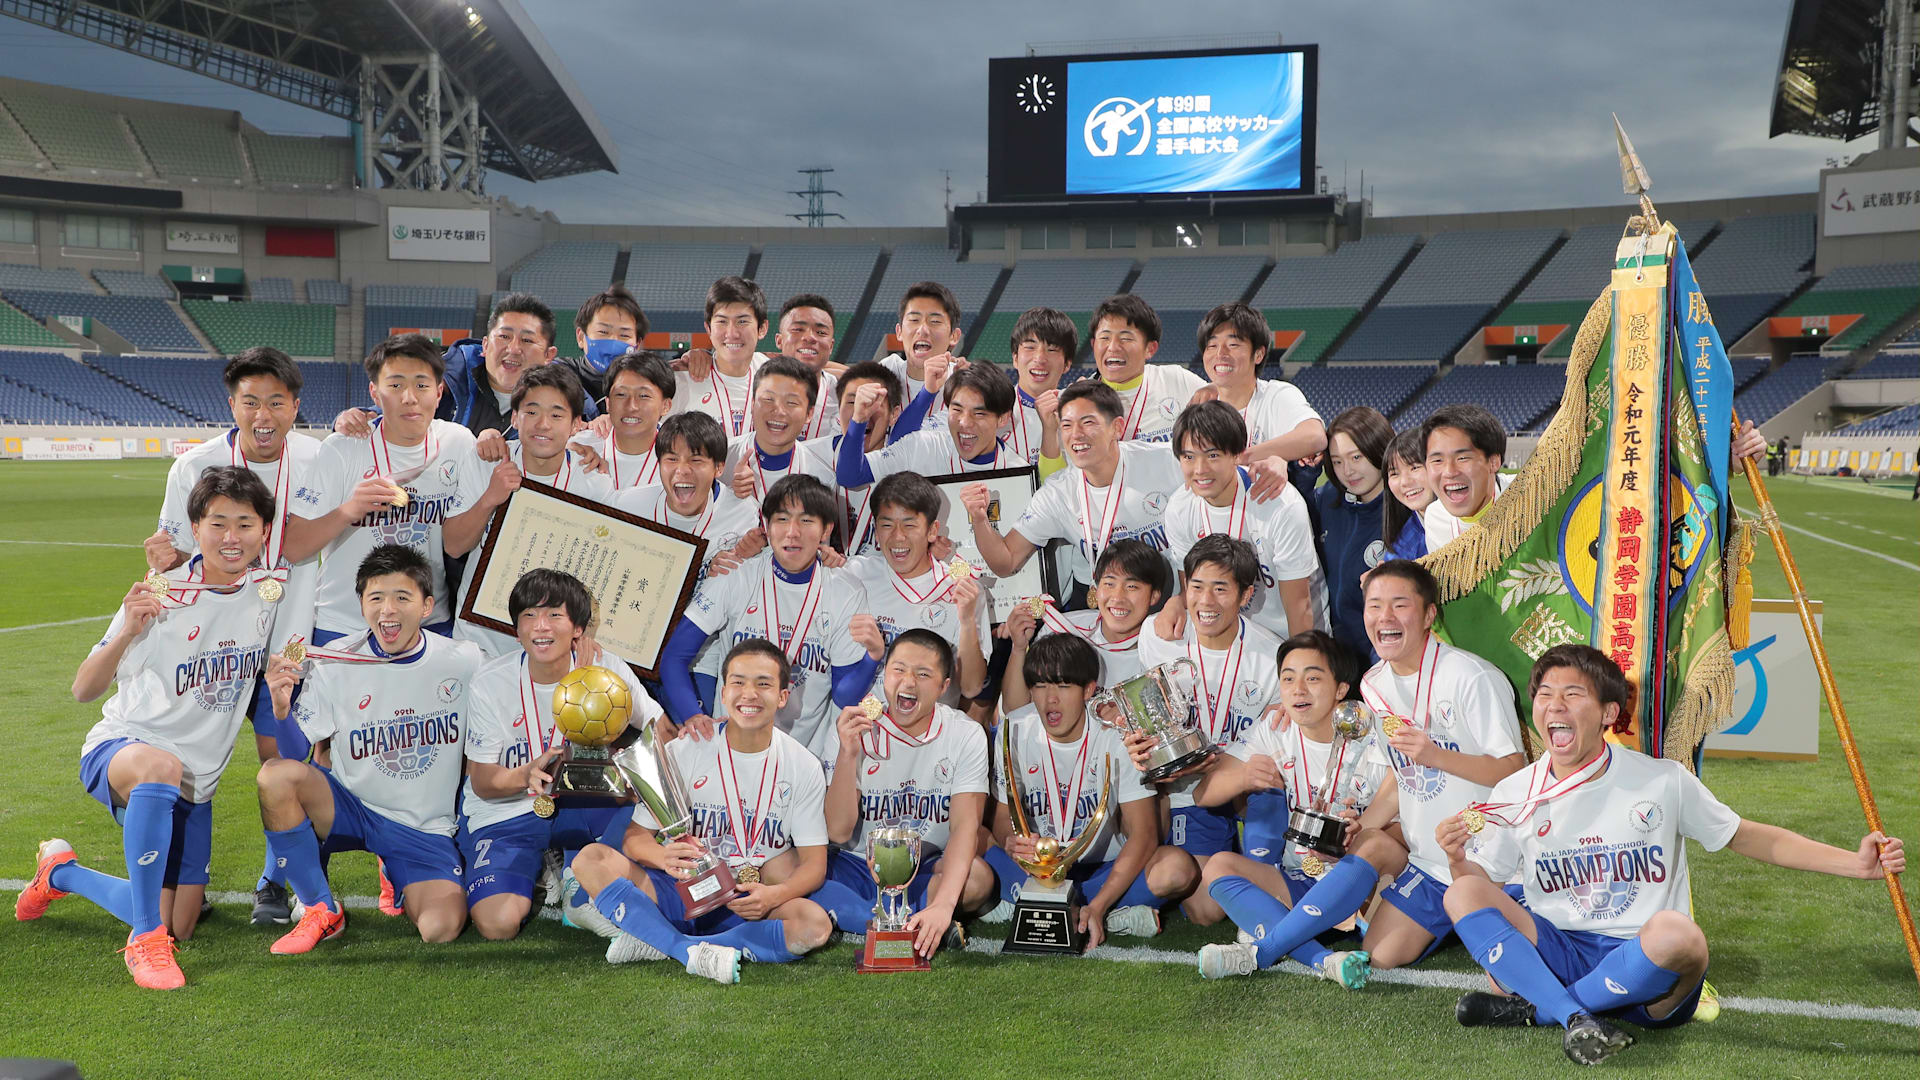 高級感 静岡学園 2020年全国高校サッカー選手権優勝記念Tシャツ 未開封